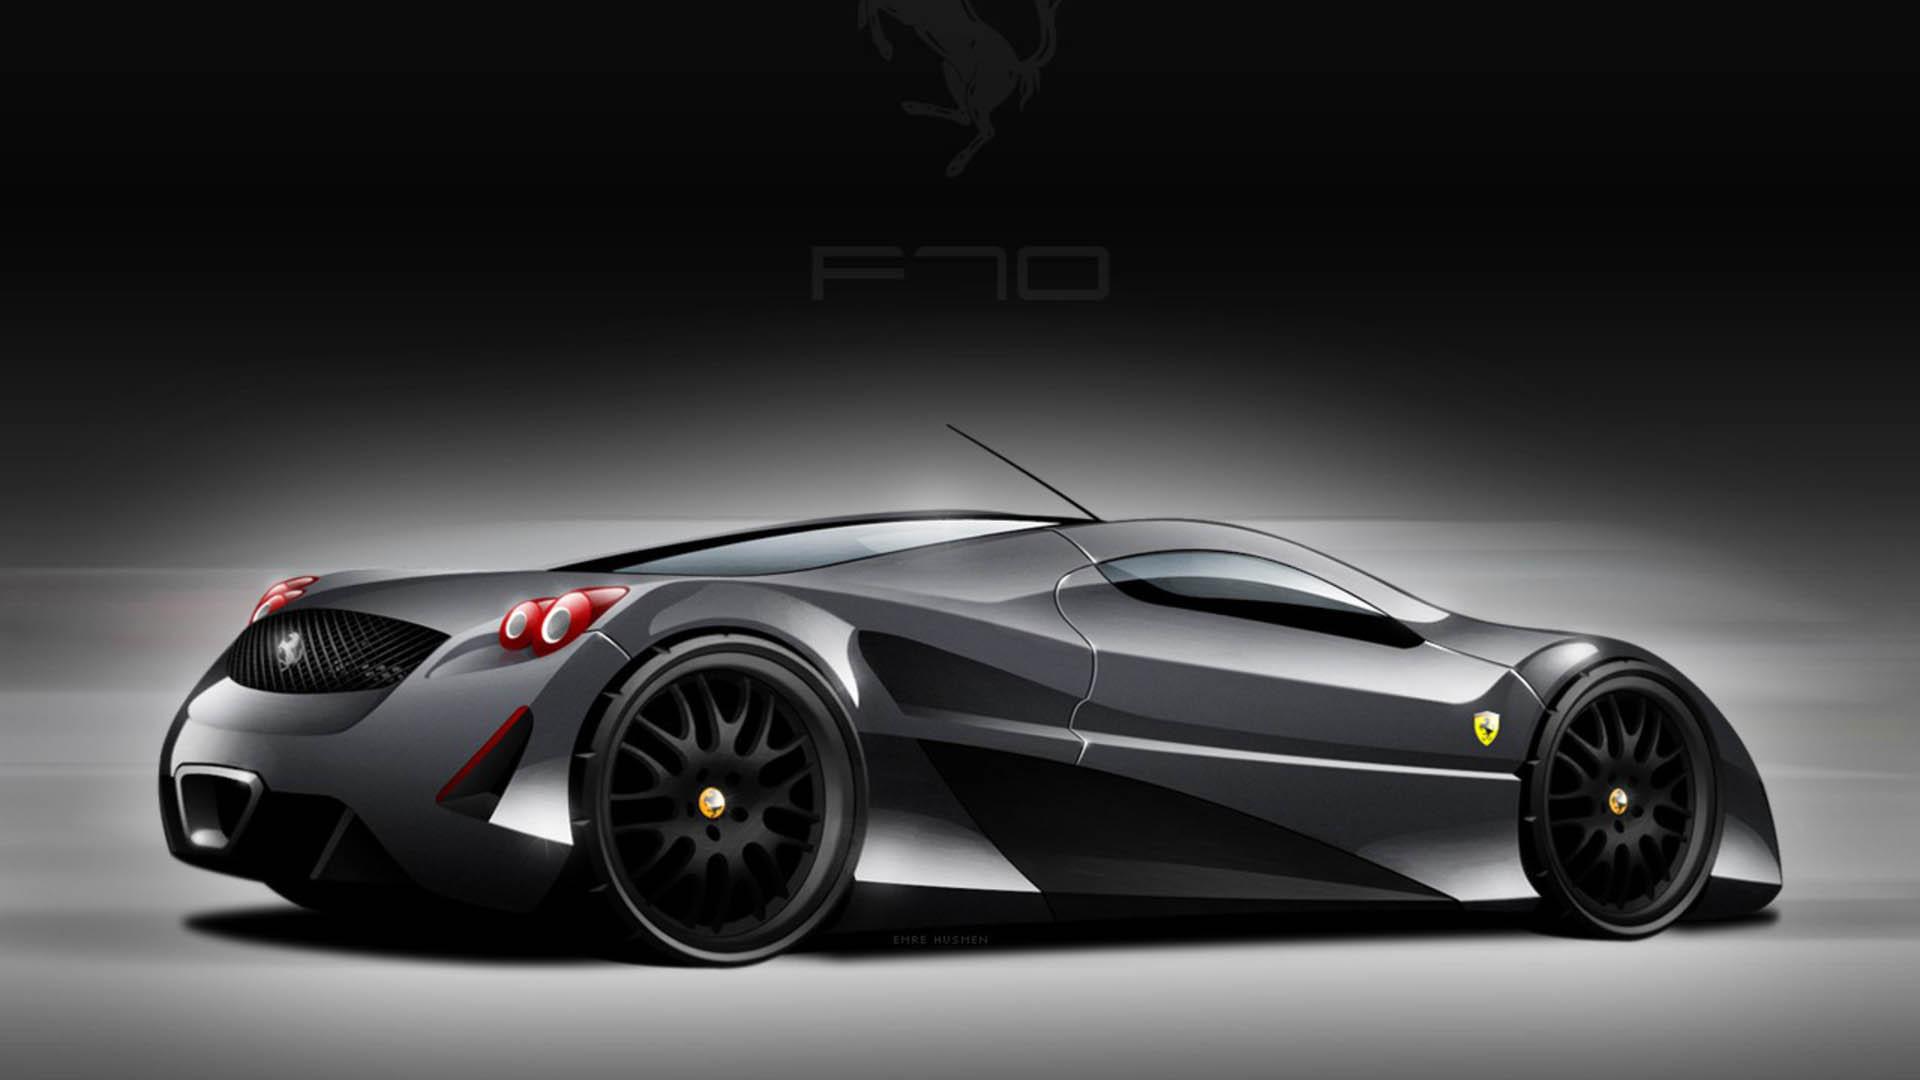 Latest HD Wallpaper of Ferrari car 2014:. Download Free HD